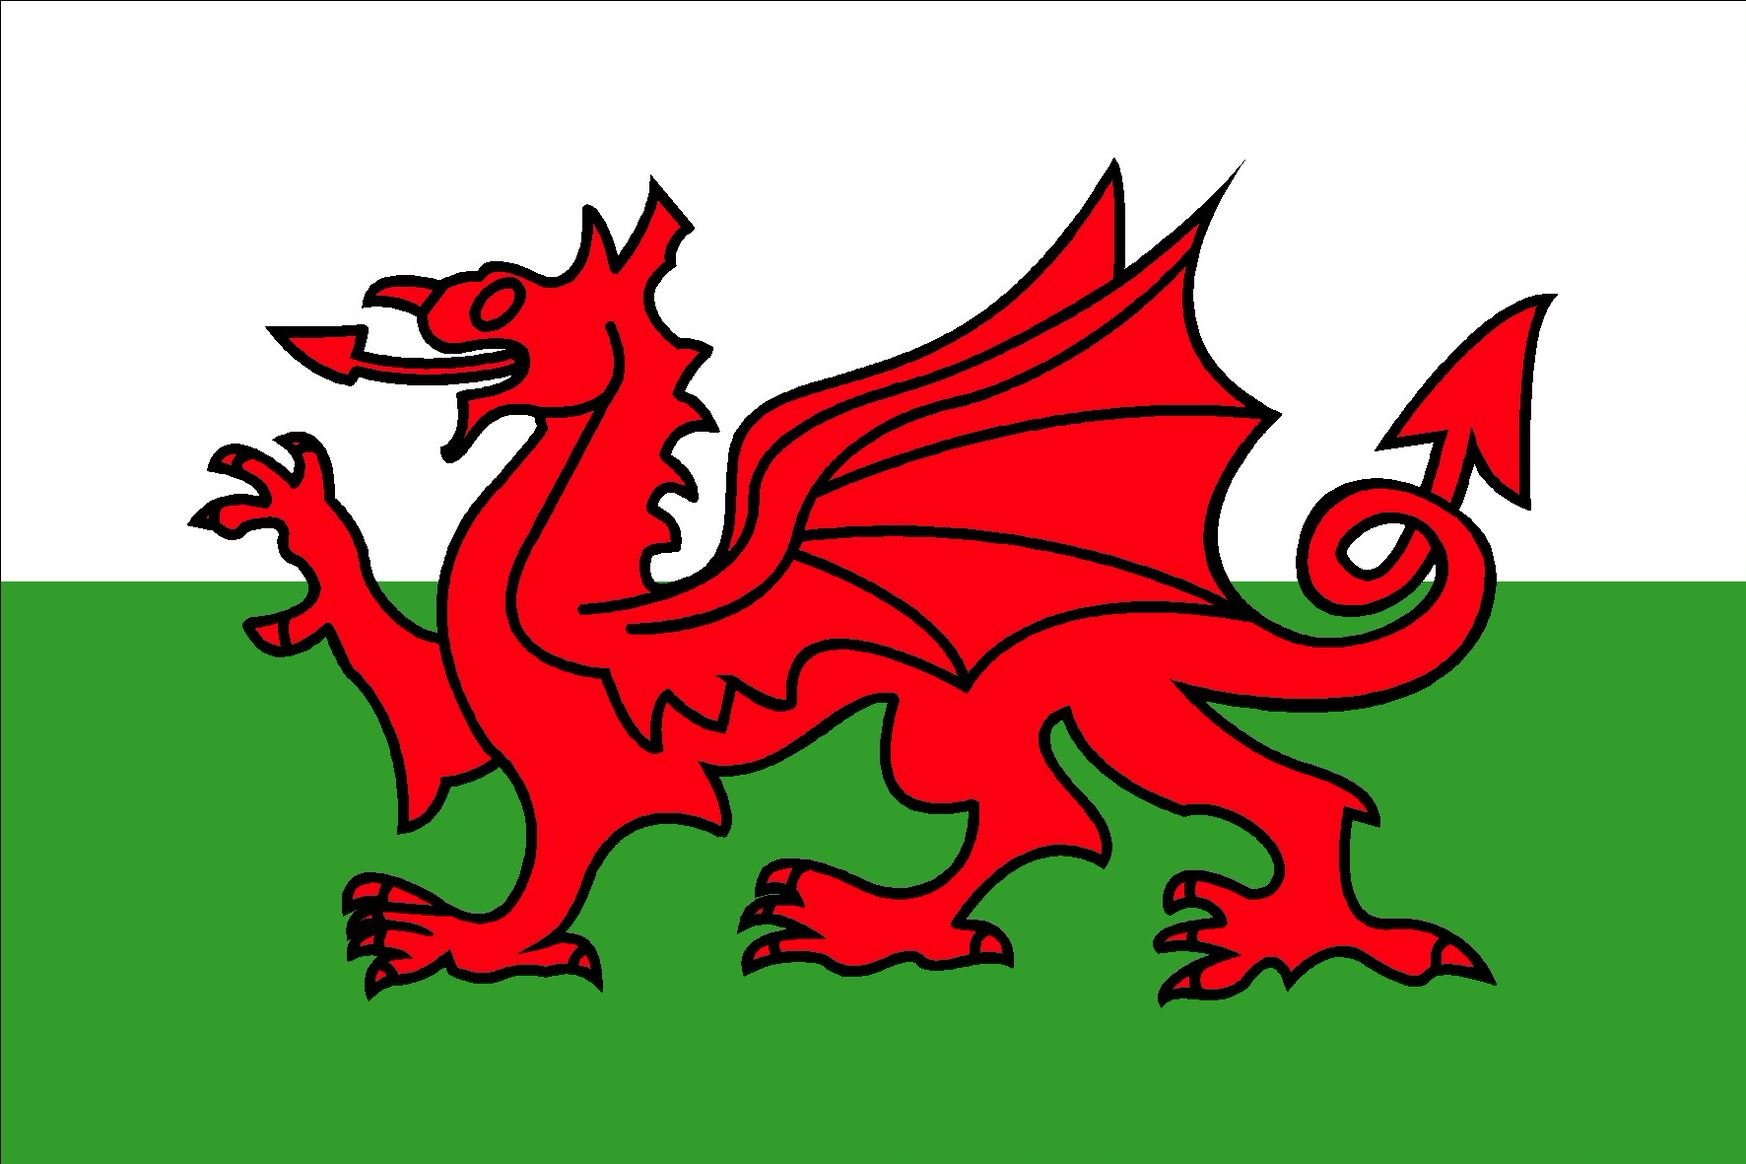 Welsh. Флаг Уэльса. Уэльс флаг флаг. Валлийский дракон флаг Уэльса. Wales Страна флаг.